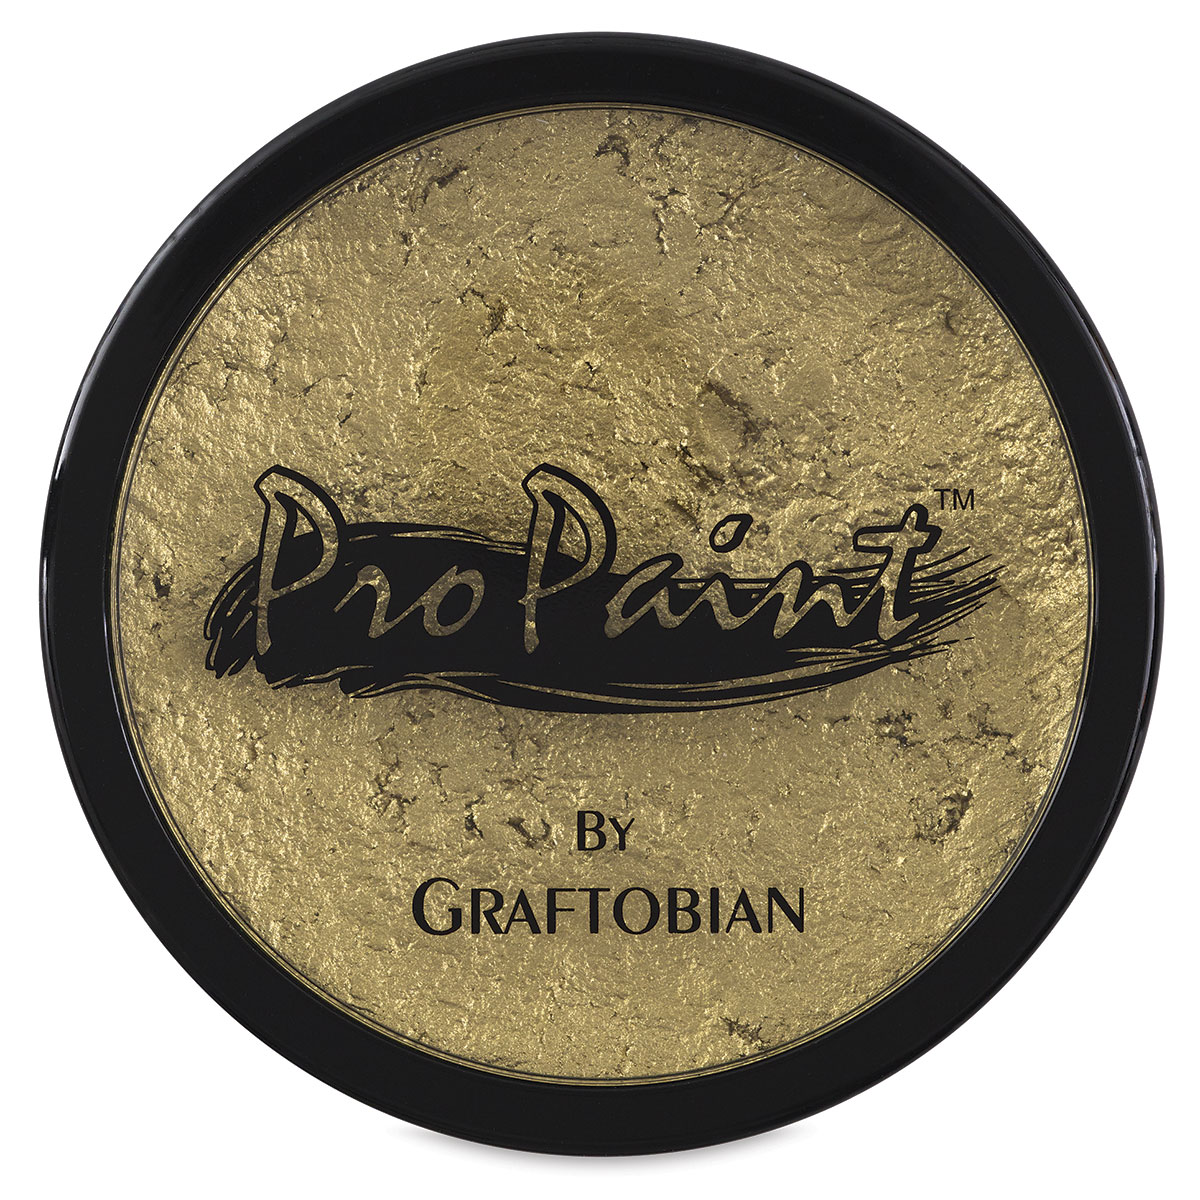 graftobian pro paint